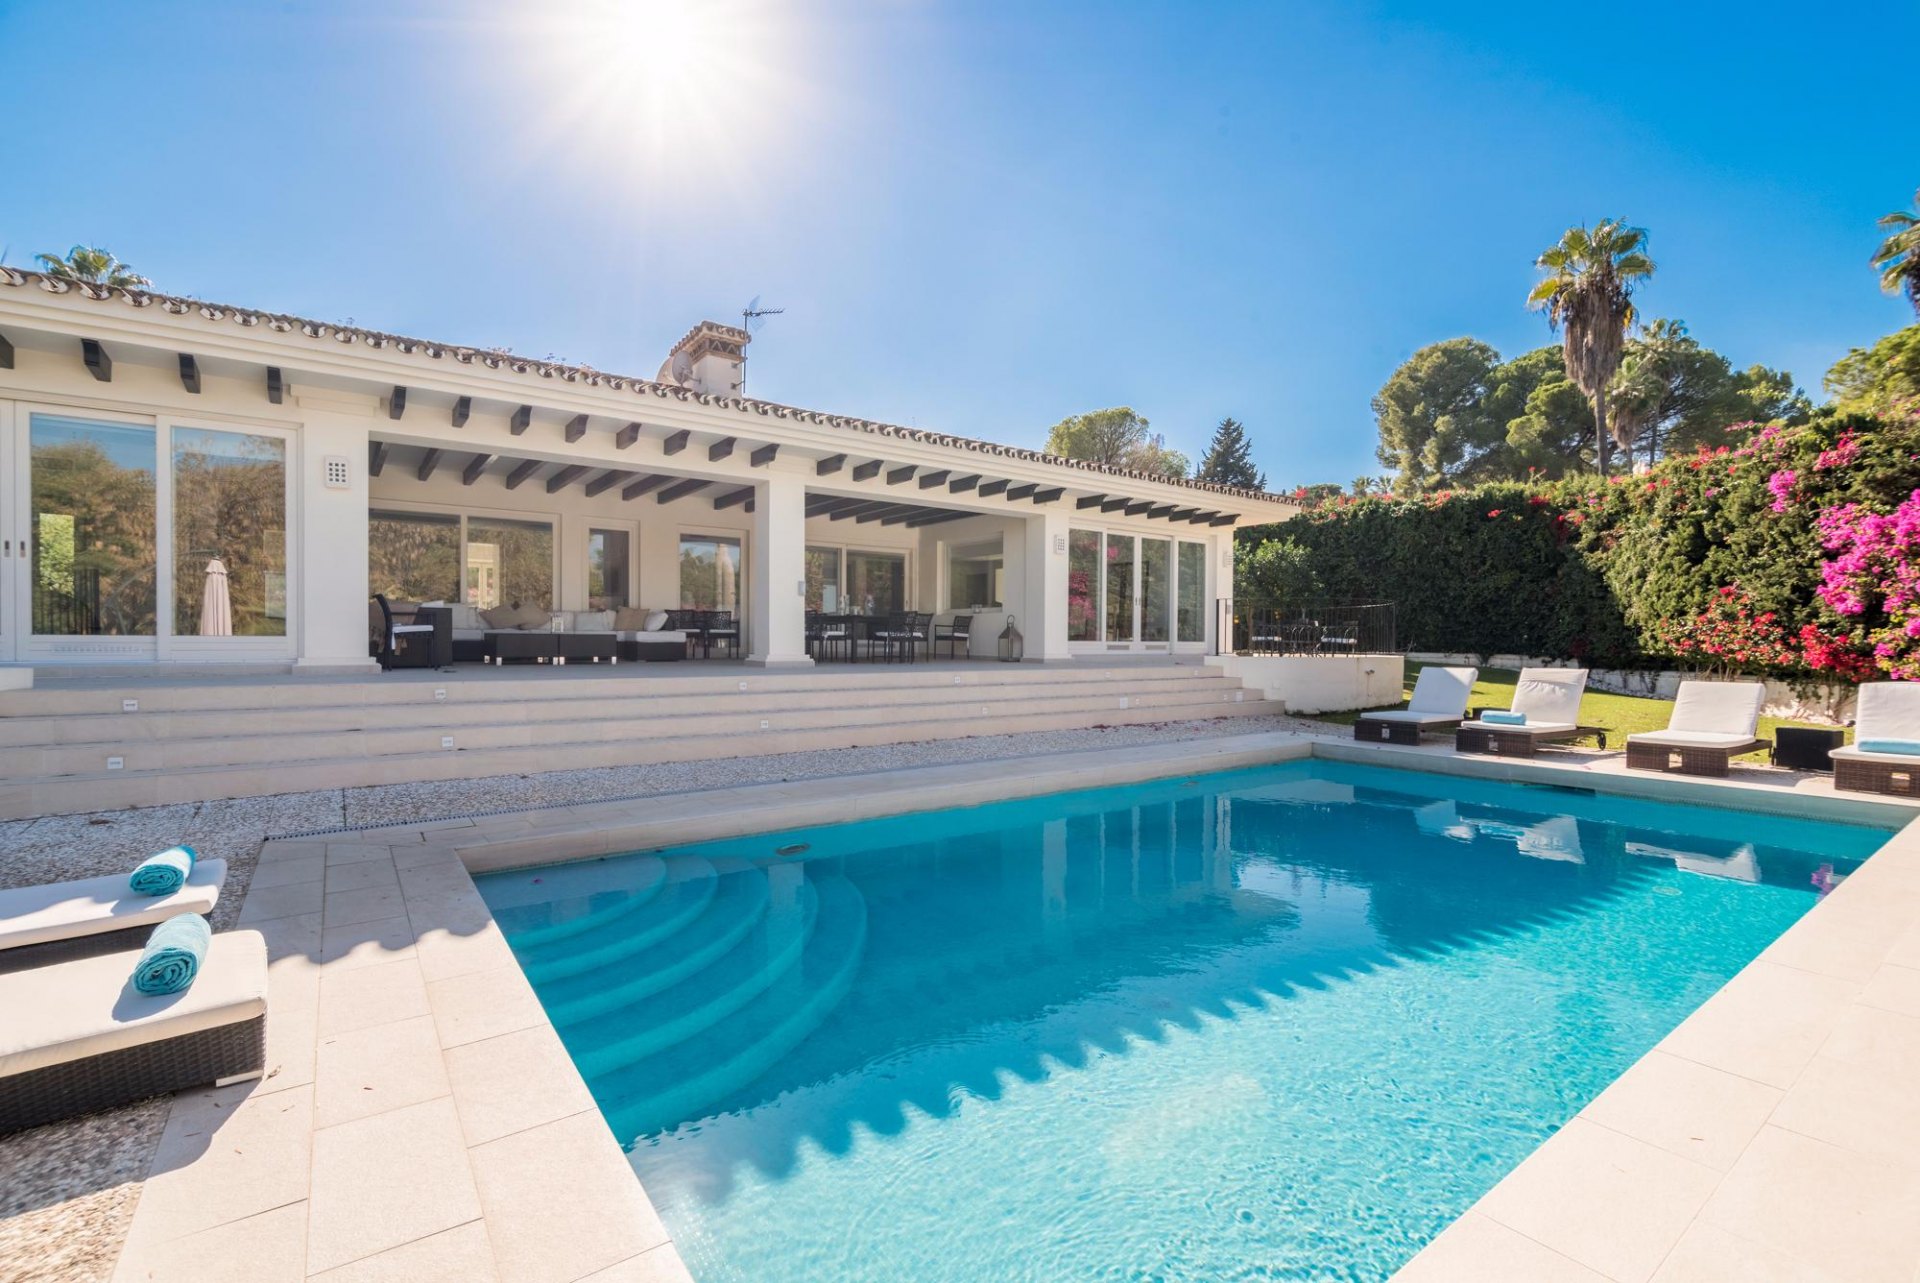 house villa on sale first line golf Las Brisas Marbella Costa del Sol beach sun